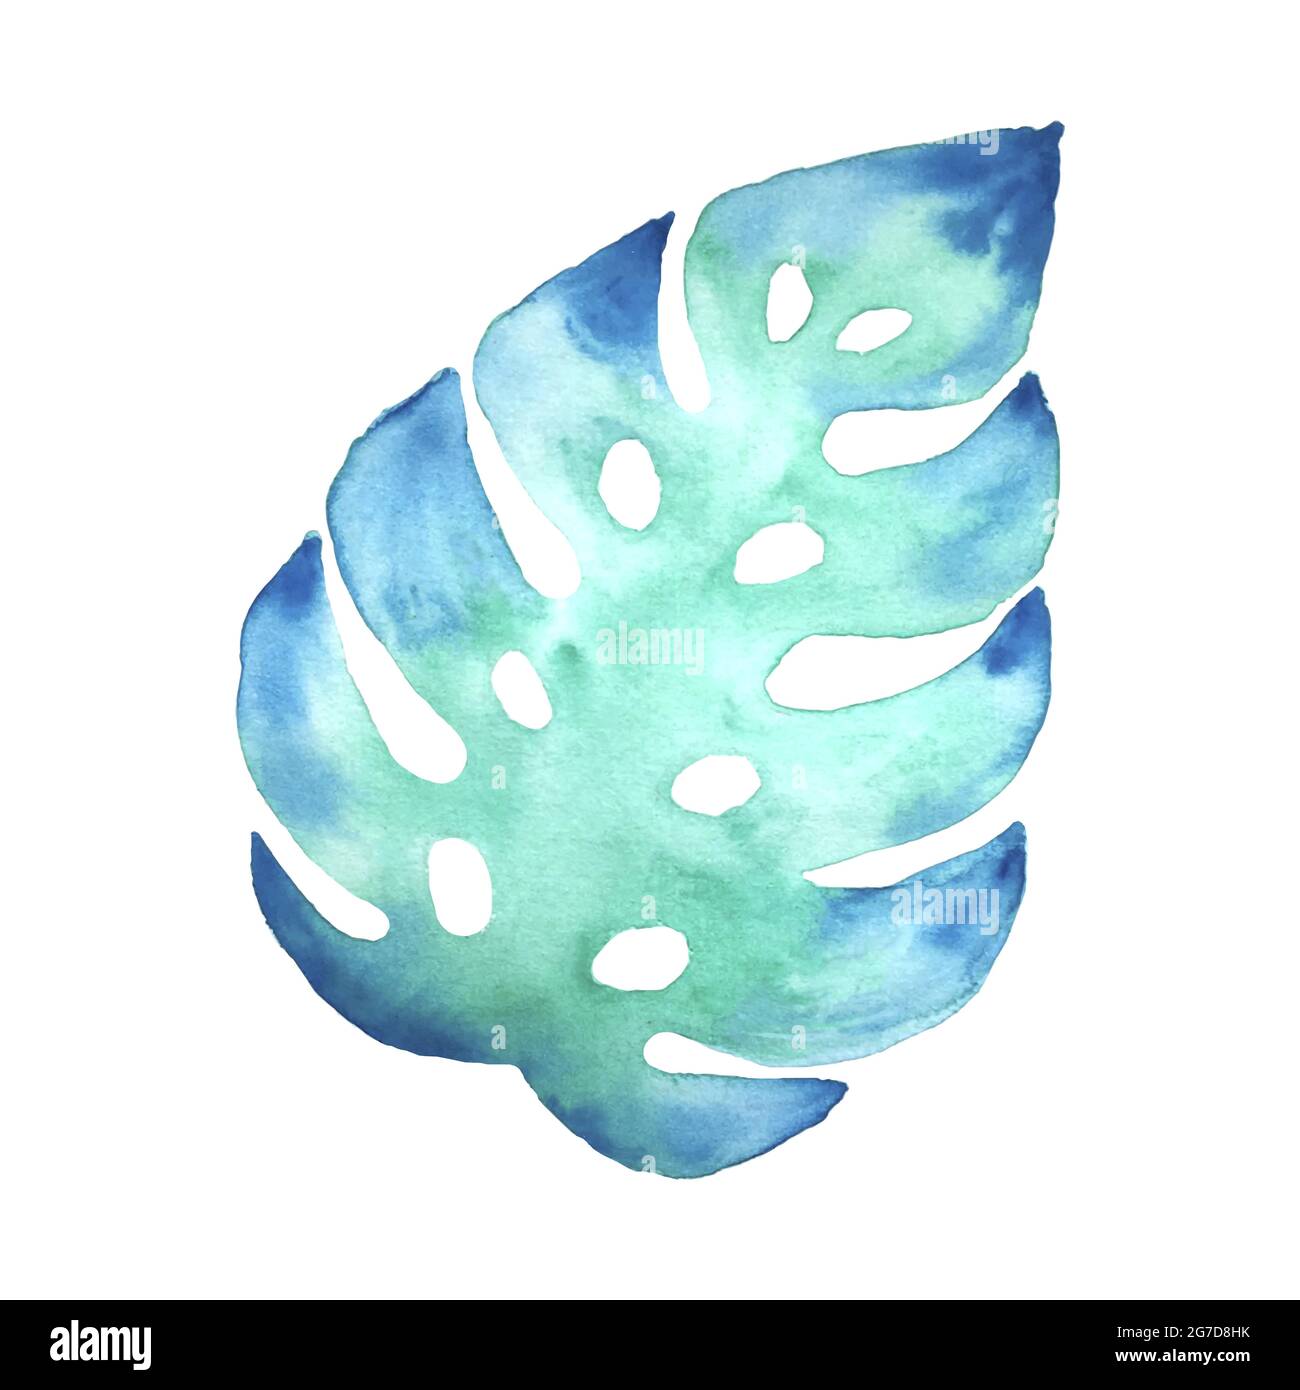 Monstera Blatt Aquarell grün aquamarinblau. Isolierter, weißer Hintergrund. Für Design, Dekor. Vektorgrafik Stock Vektor